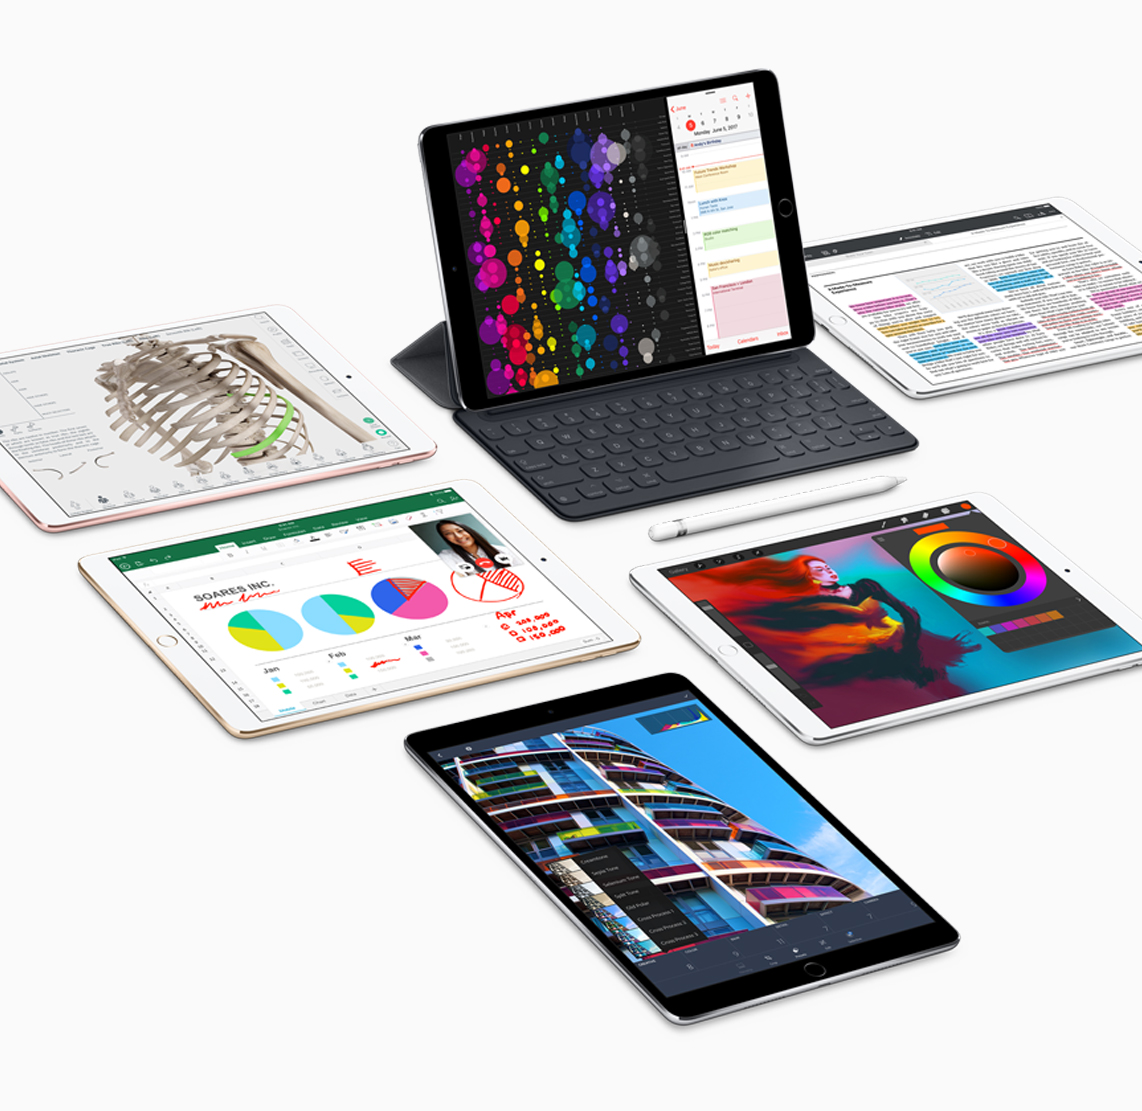 Immagine pubblicata in relazione al seguente contenuto: Apple introduce l'iPad Pro da 10.5-inch e un nuovo iPad Pro da 12.9-inch | Nome immagine: news26472_Apple-iPad-Pro-WWDC-2017_3.jpg